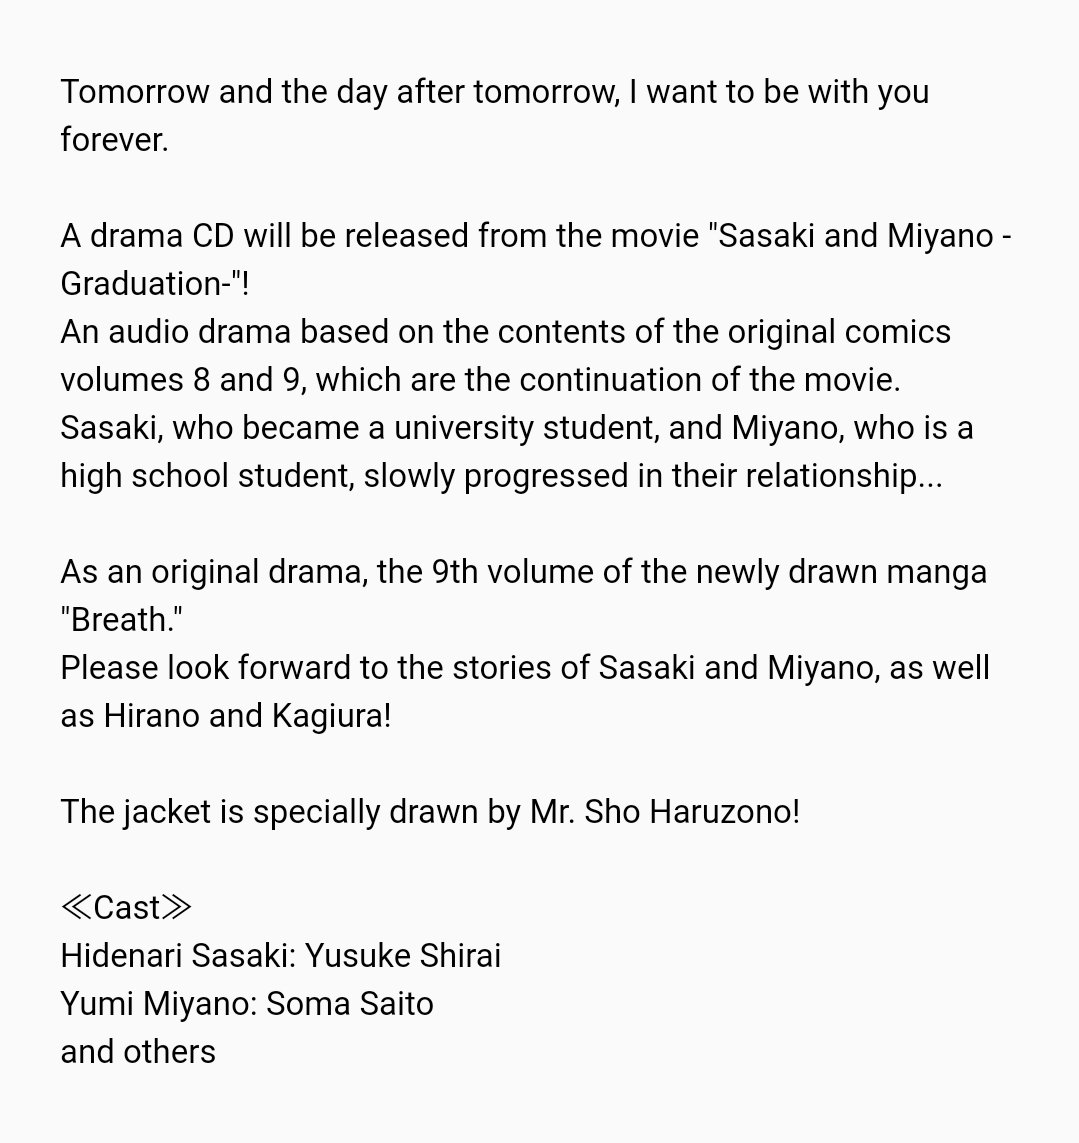 [CD] Movie Sasaki and Miyano - Graduation Edition - Drama CD